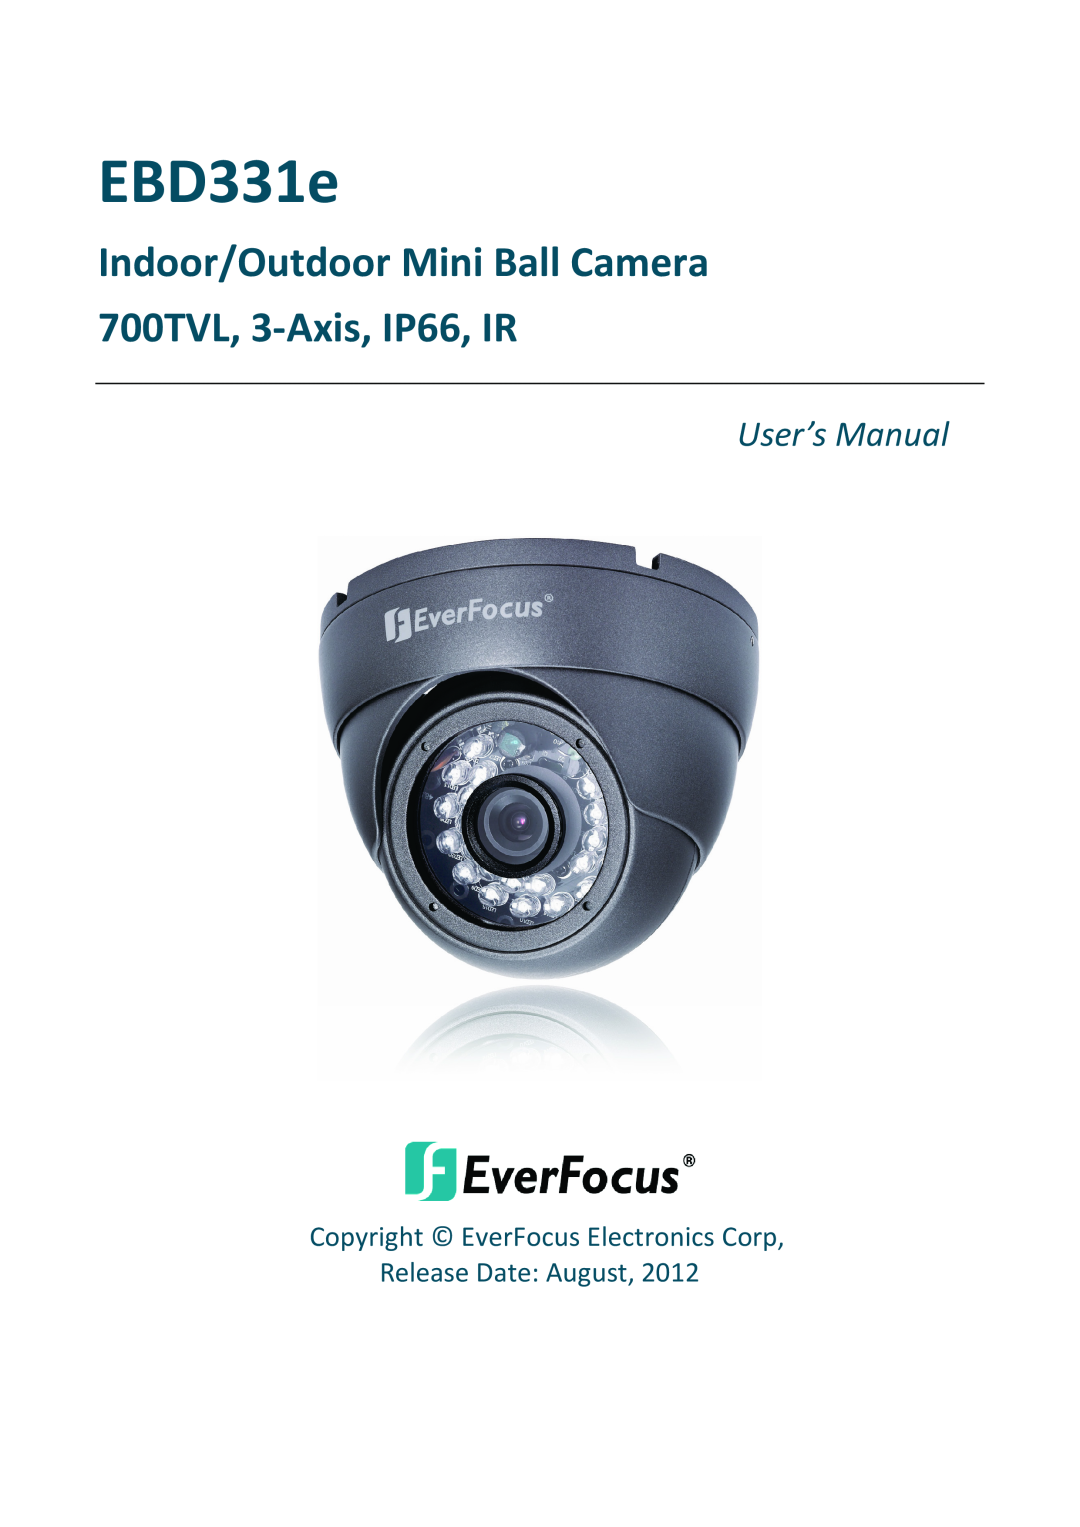 EverFocus EBD331e user manual Indoor/Outdoor Mini Ball Camera 700TVL, 3-Axis, IP66, IR, User’s Manual 